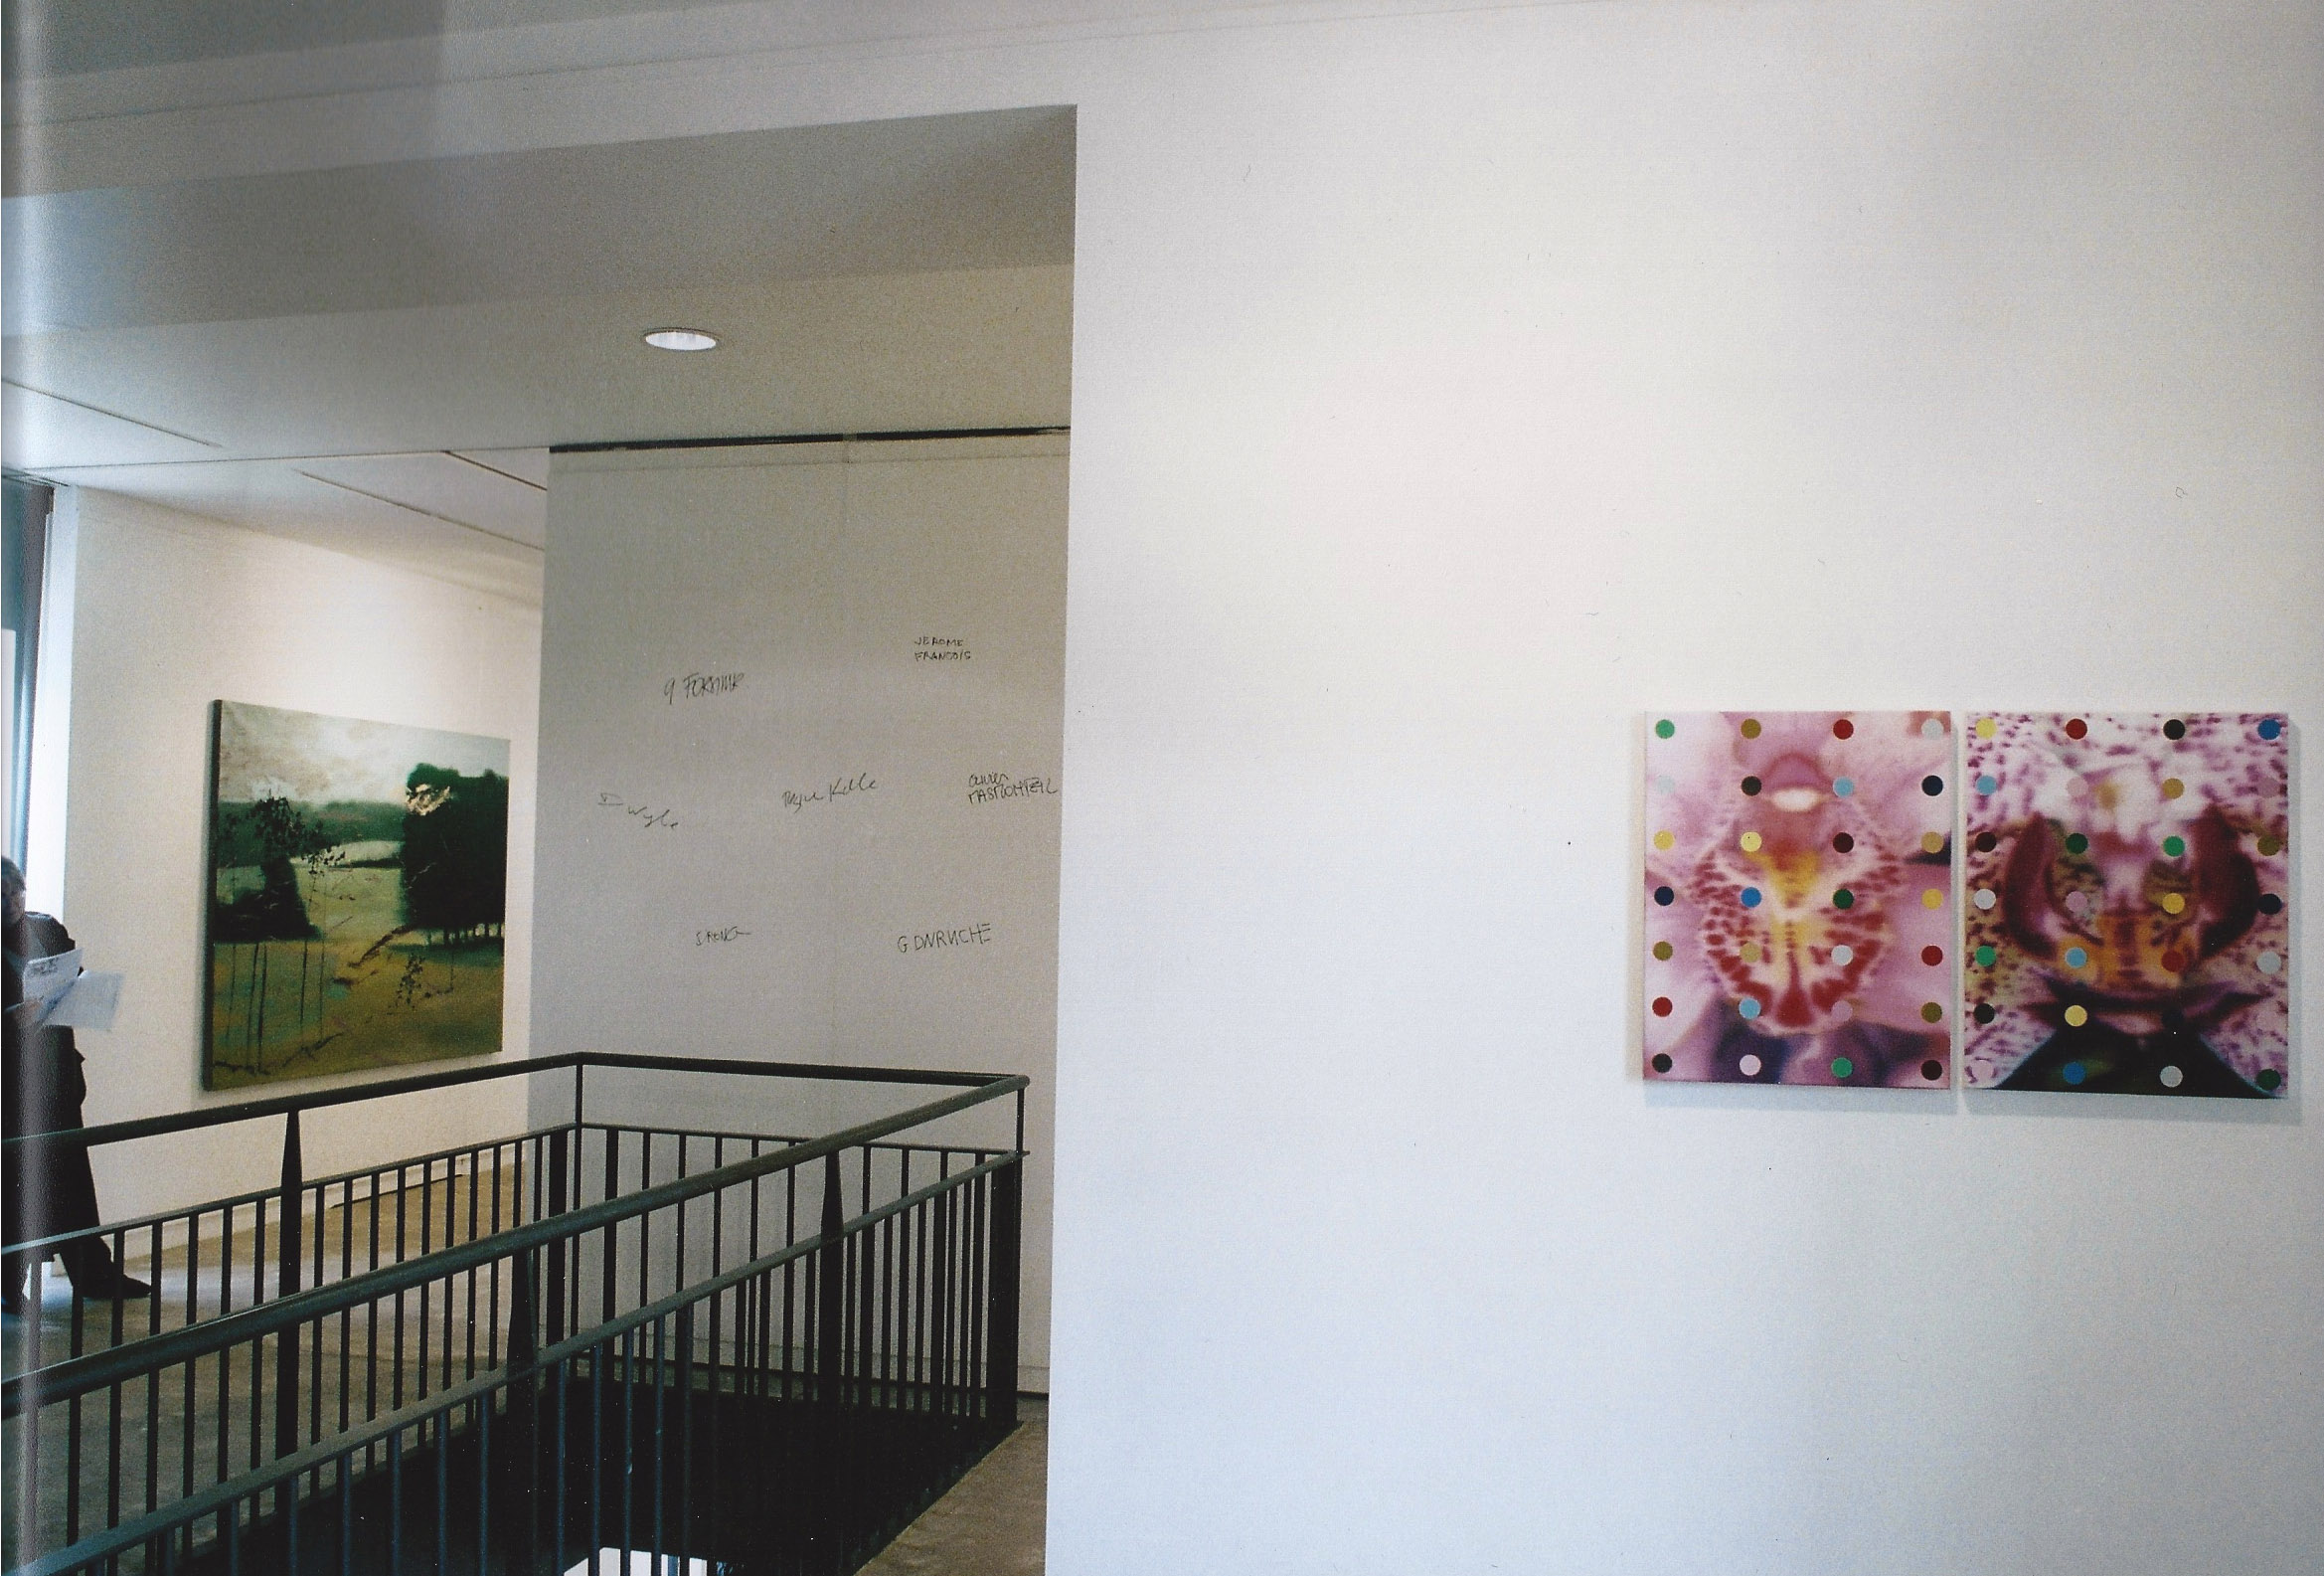   Etats de Peinture , Maison des Arts de Malakoff (FR)&nbsp;2003. Curator Philippe Piguet. Artists in view : Olivier Masmonteil, Duncan Wylie 